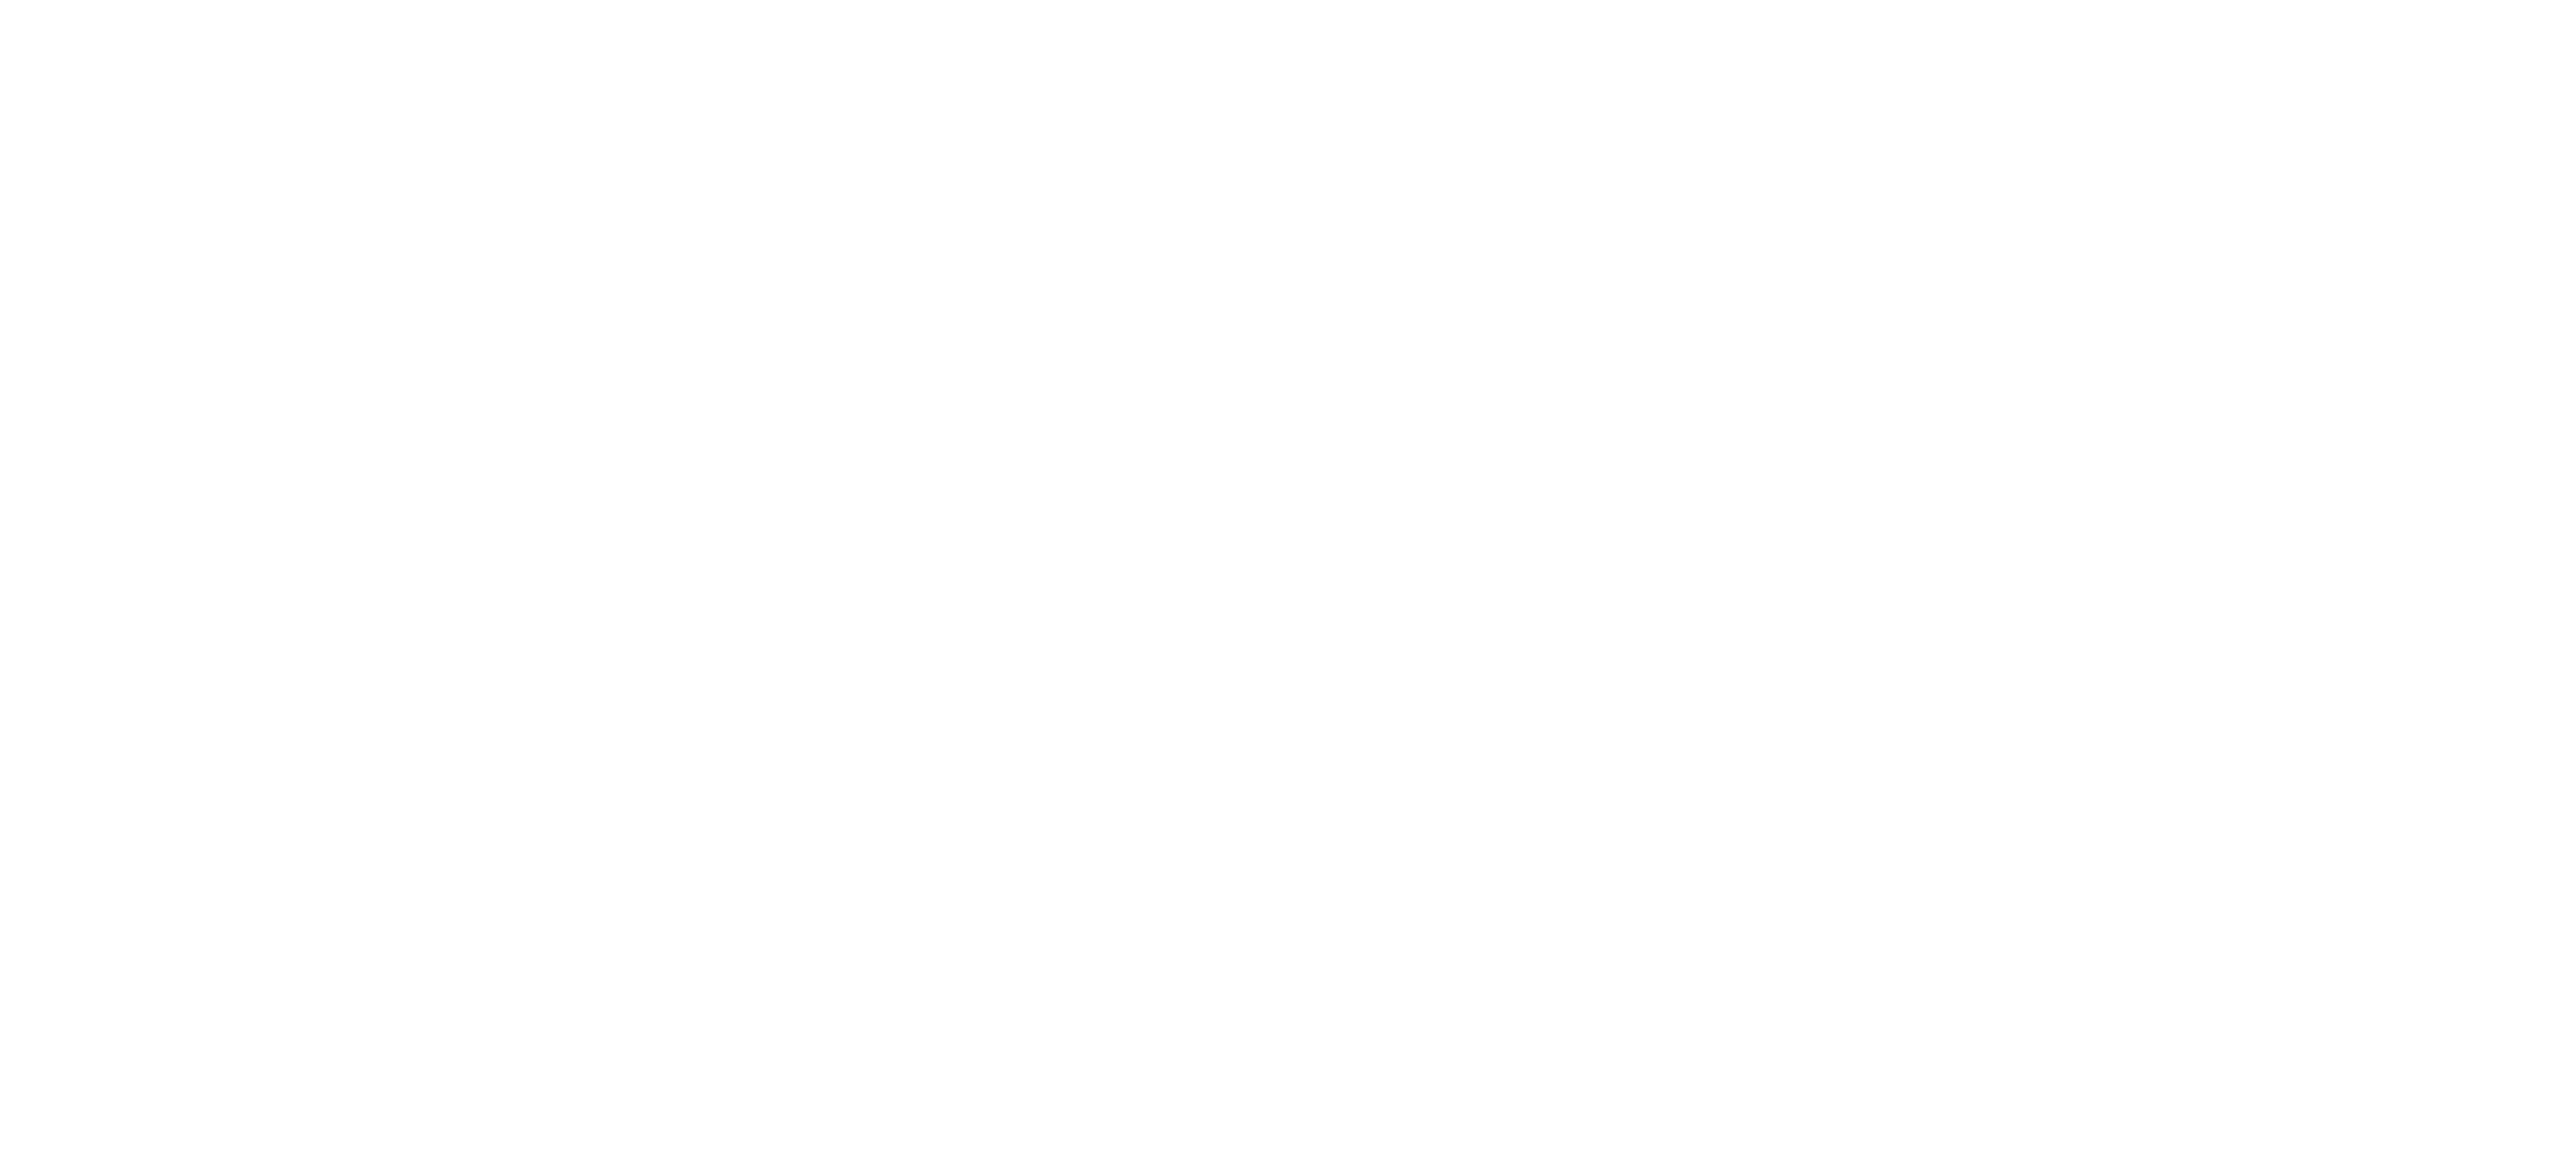 Colombo Ezio